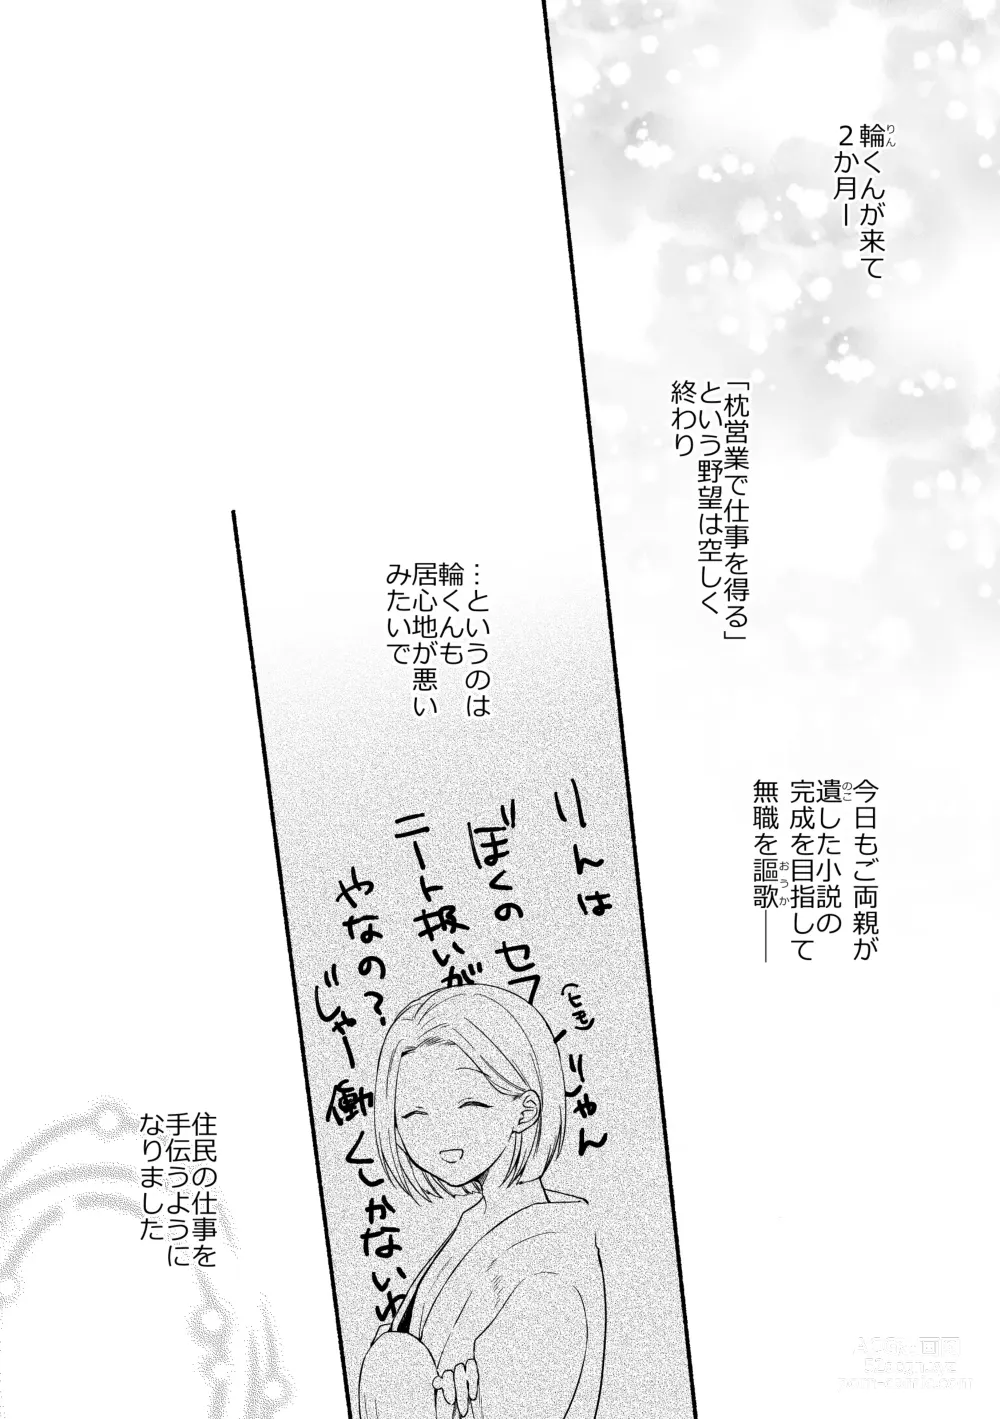 Page 2 of doujinshi Seijinkou Mangakka, Hamedori Haishin Ganbarimasu.